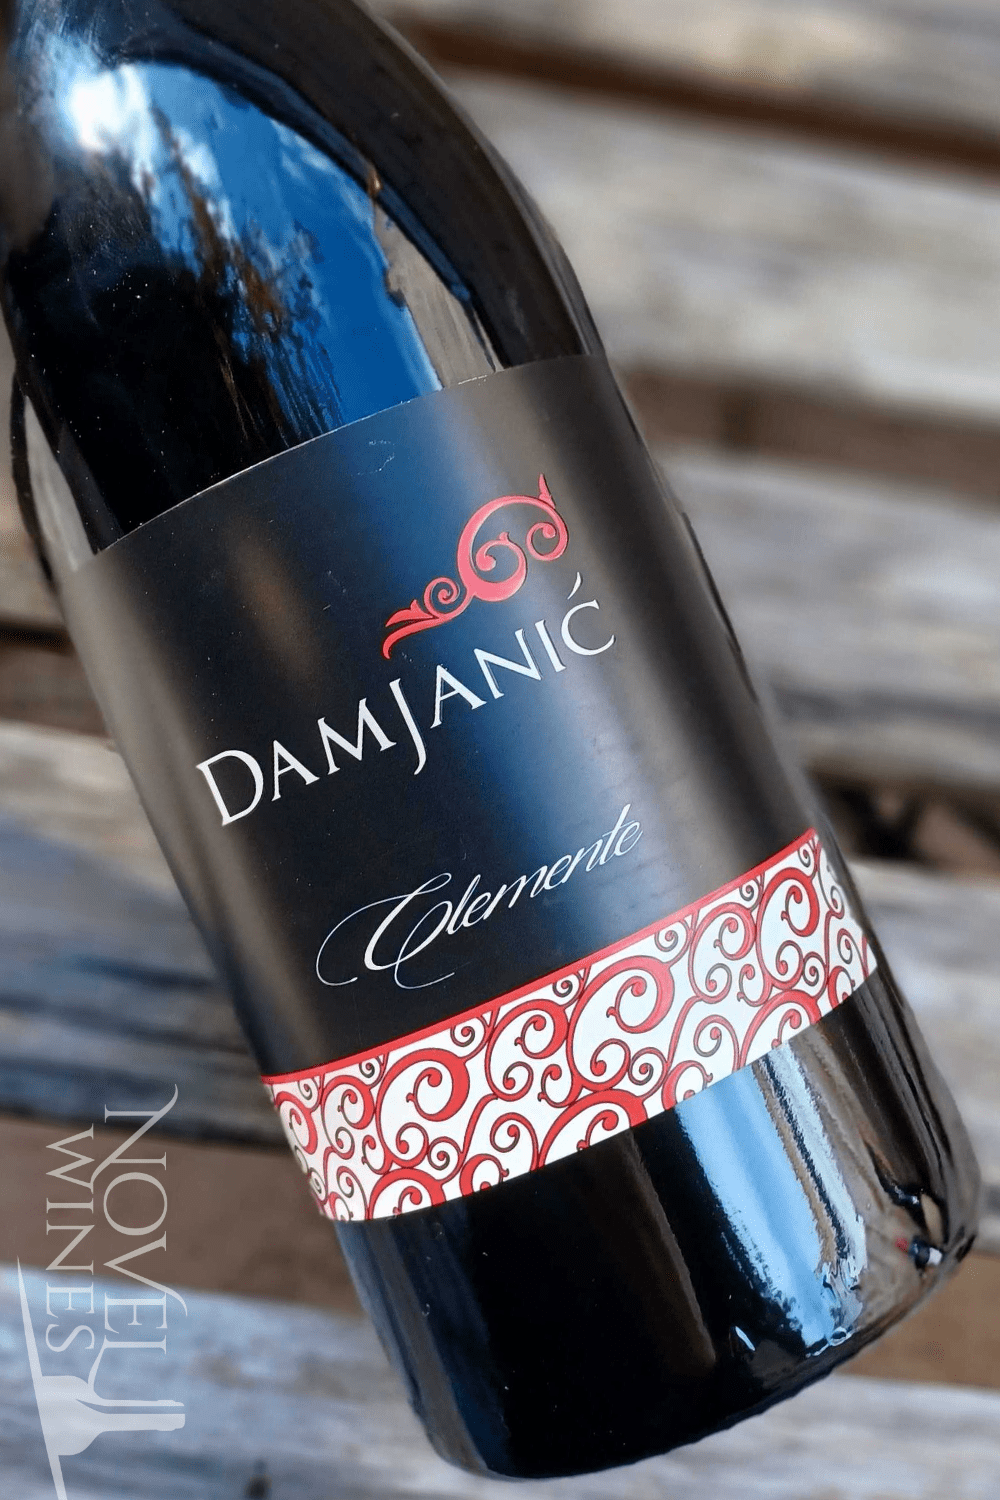 Damjanic Red Wine Damjanic Clemente 2015, Croatia